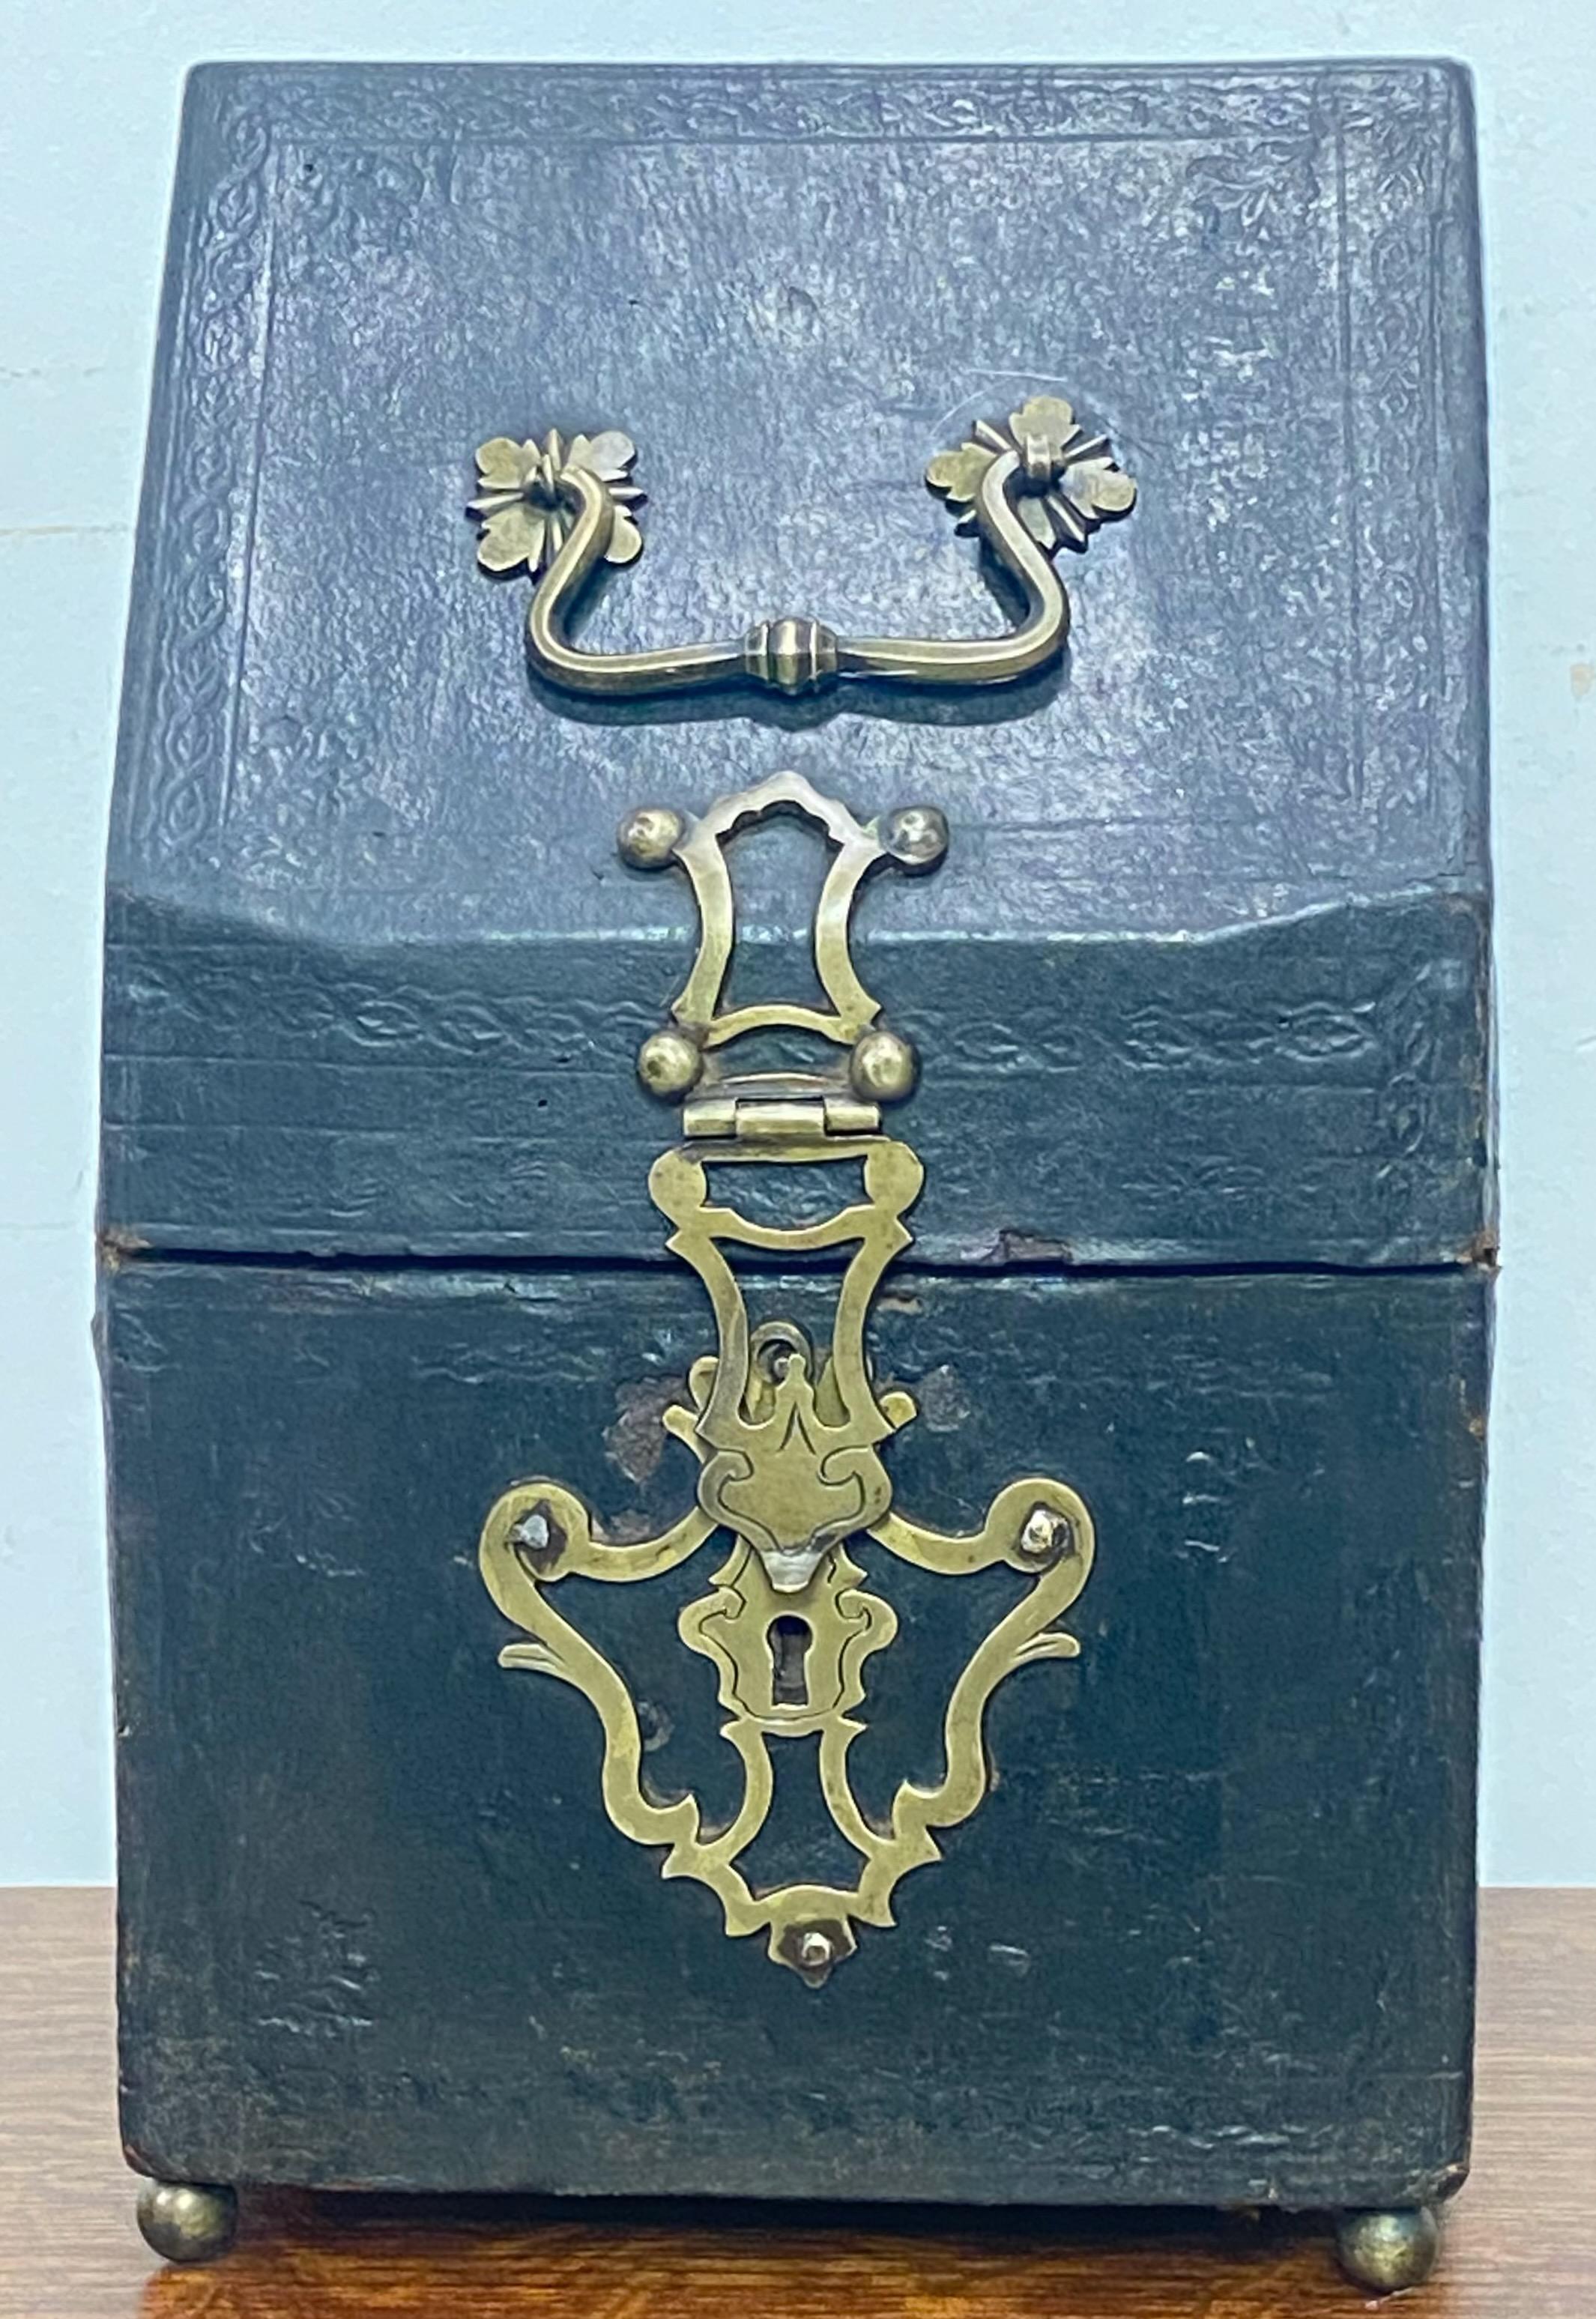 zu einem Briefkasten umgebauter lederner Messerkasten aus dem 17. Jahrhundert mit originalen Messingbeschlägen, auf Messingkugelfüßen stehend.
Innen mit Seidenstoff aus dem 18. Jahrhundert gefüttert.
In sehr gutem Zustand in Anbetracht seines